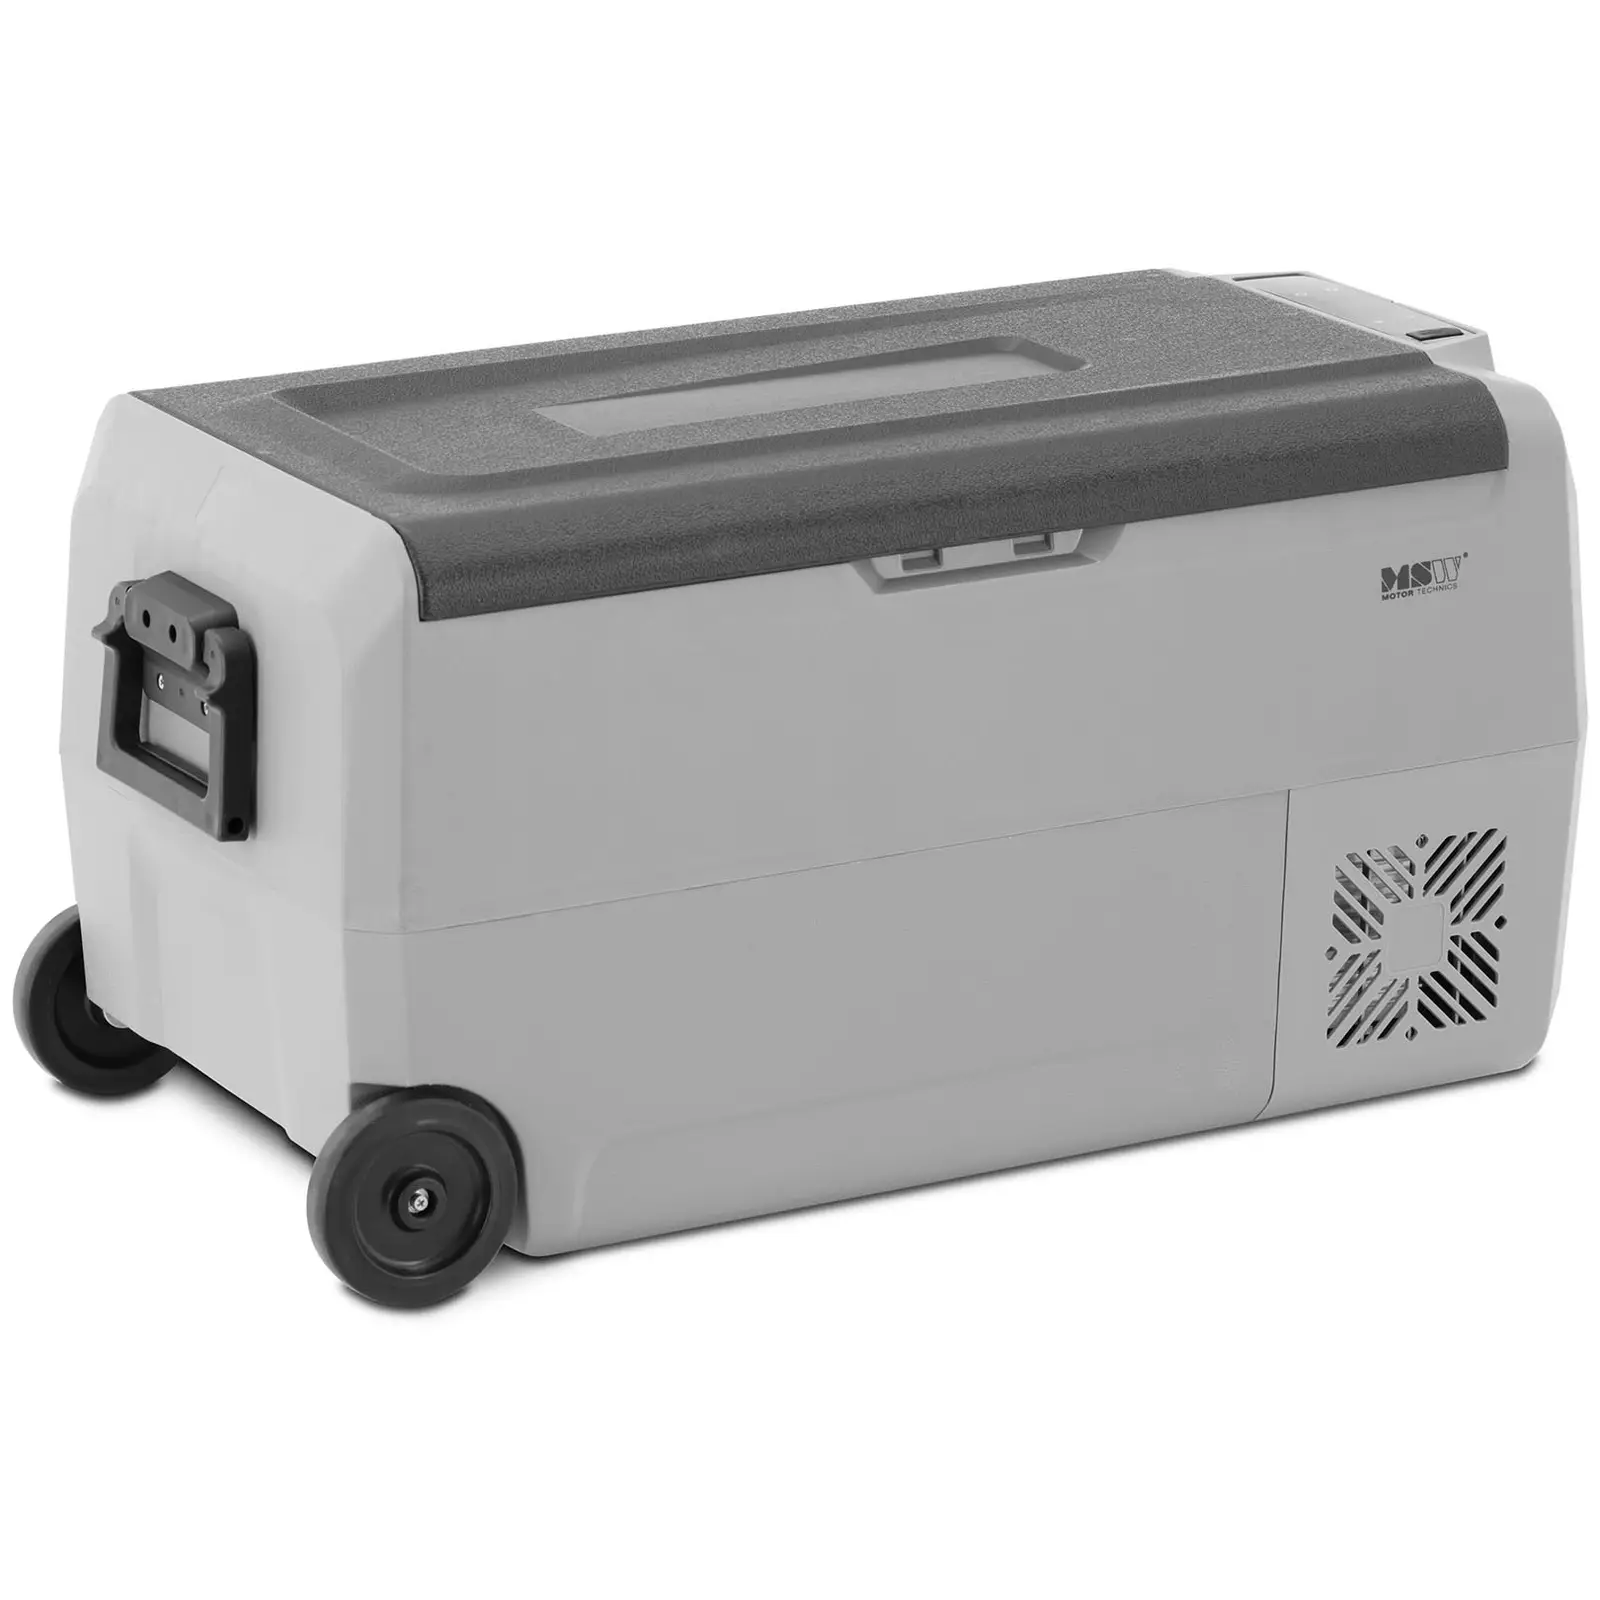 Refrigerador para automóvil / congelador - 12/24 V (DC) / 100 - 240 V (AC) - 36 L - 2 zonas térmicas independientes